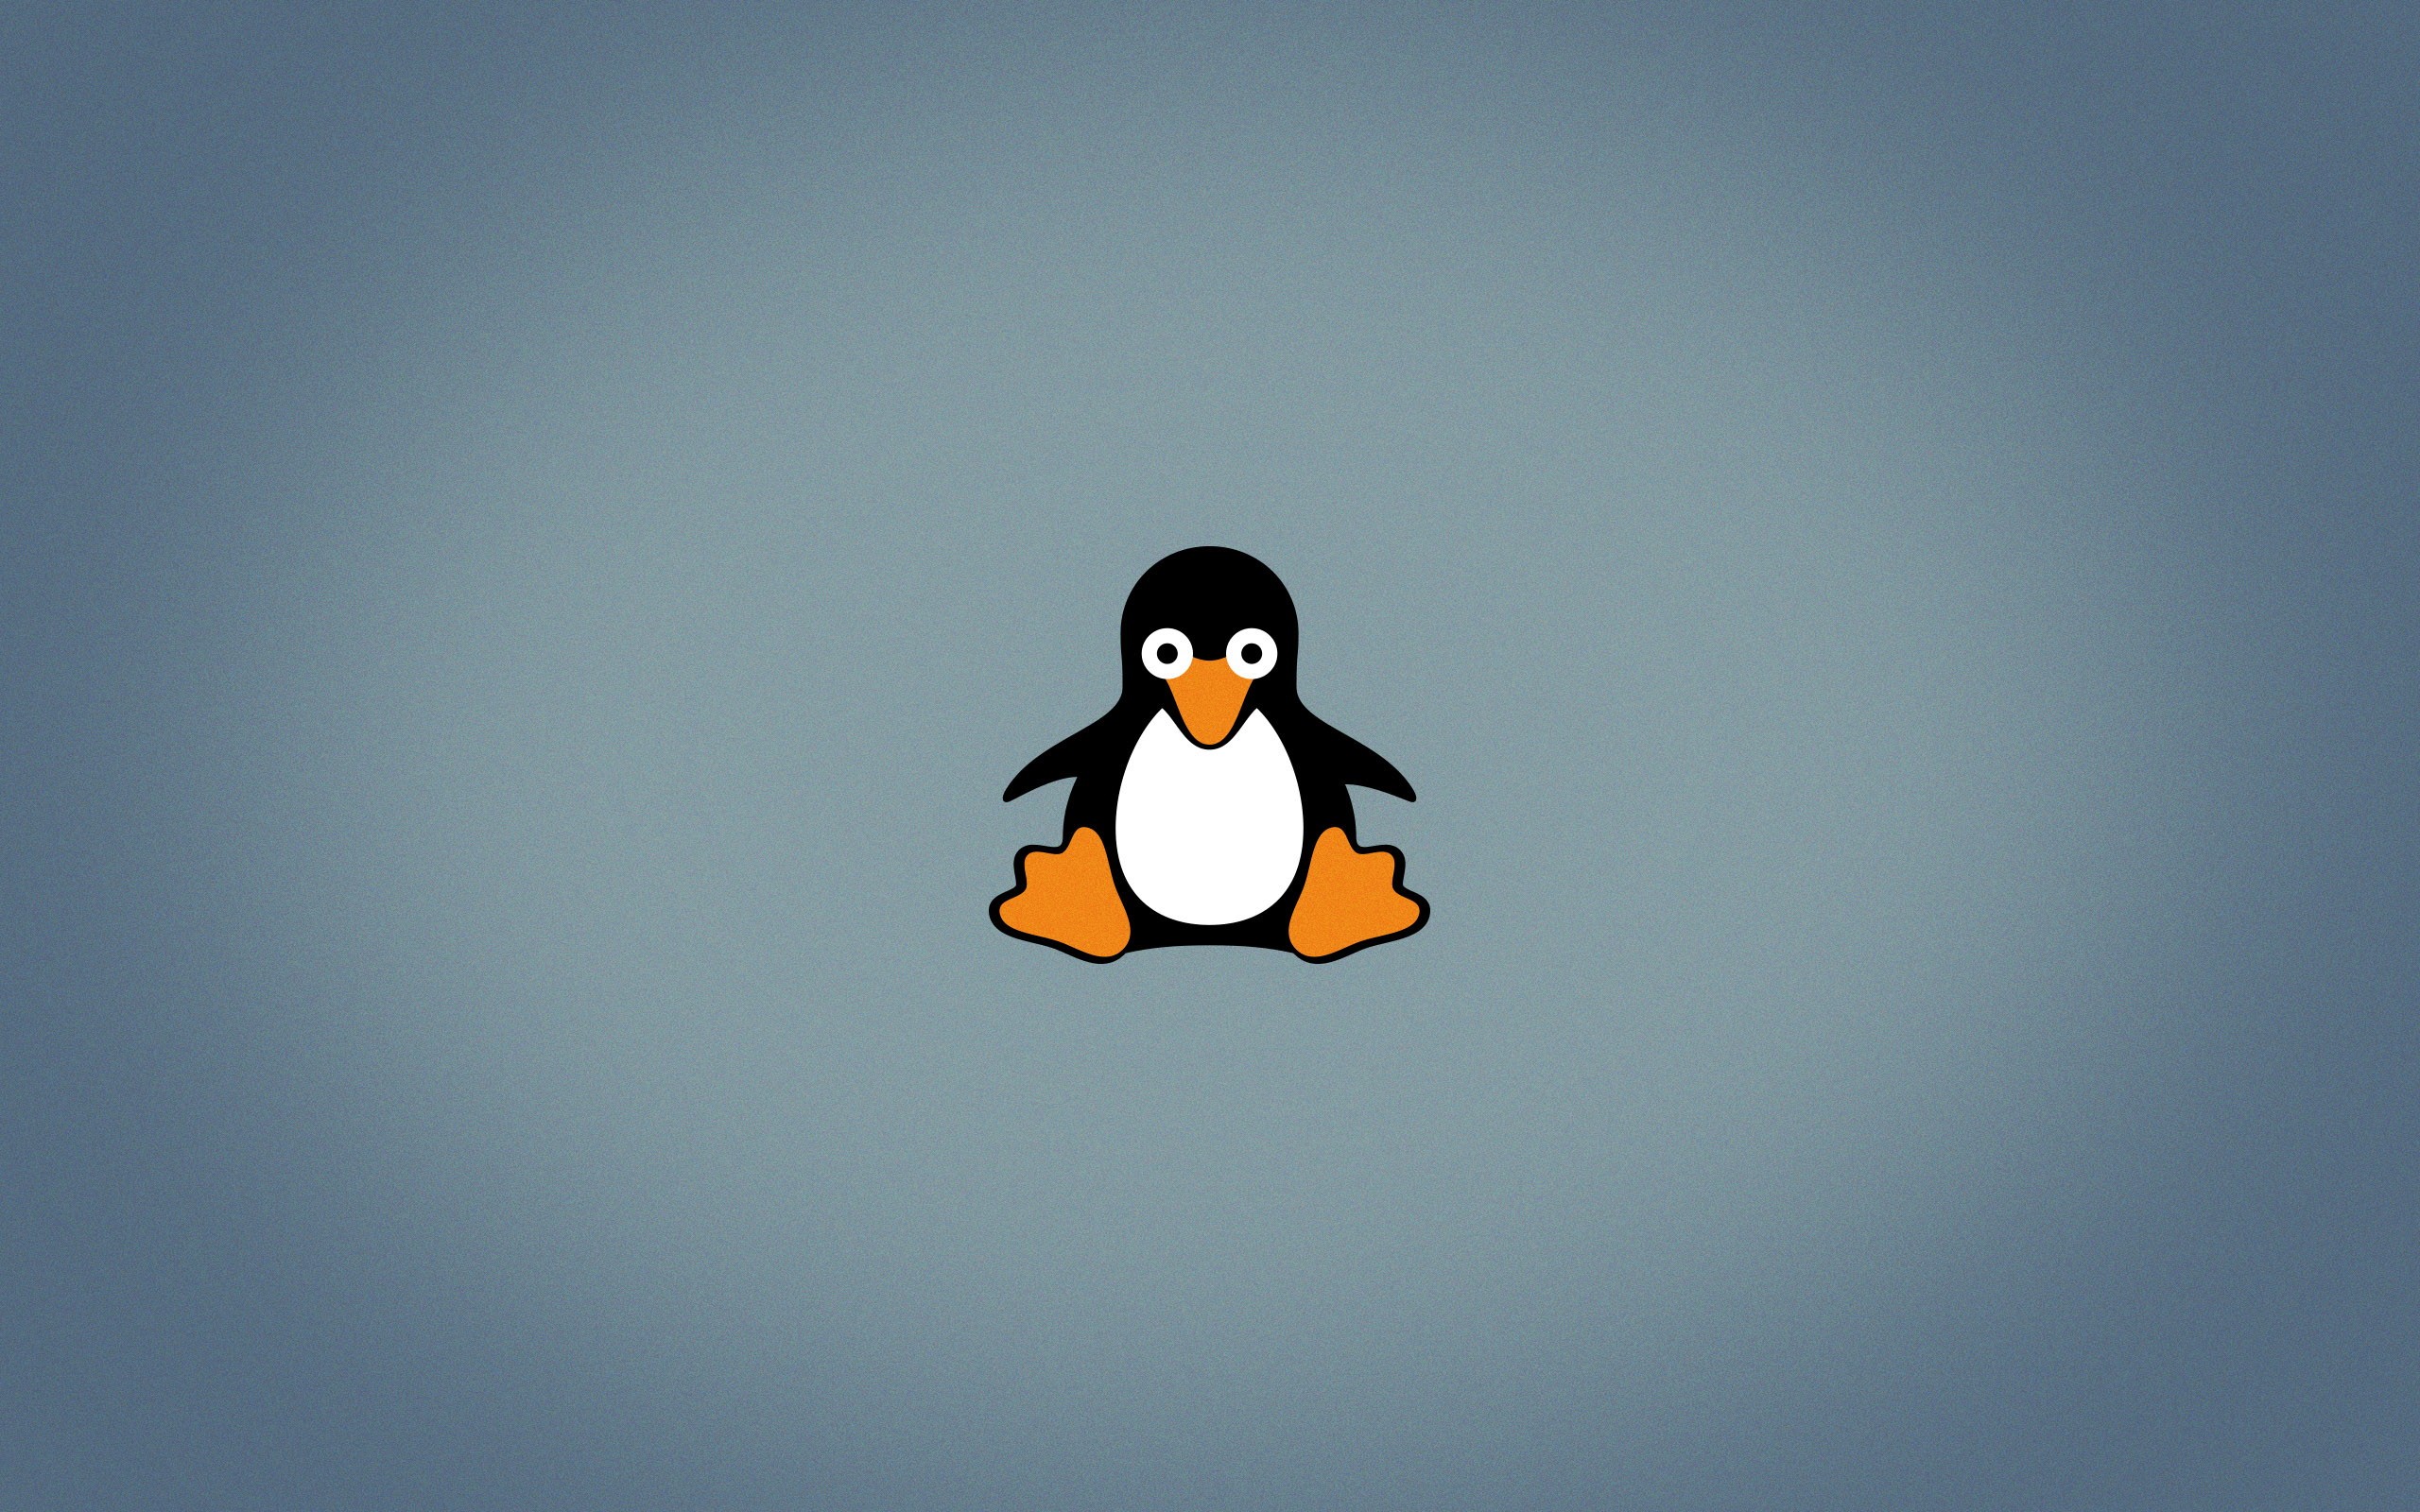 Wallpaper, 2560x1600 px, Linux, logo, open source, penguins, Tux 2560x1600